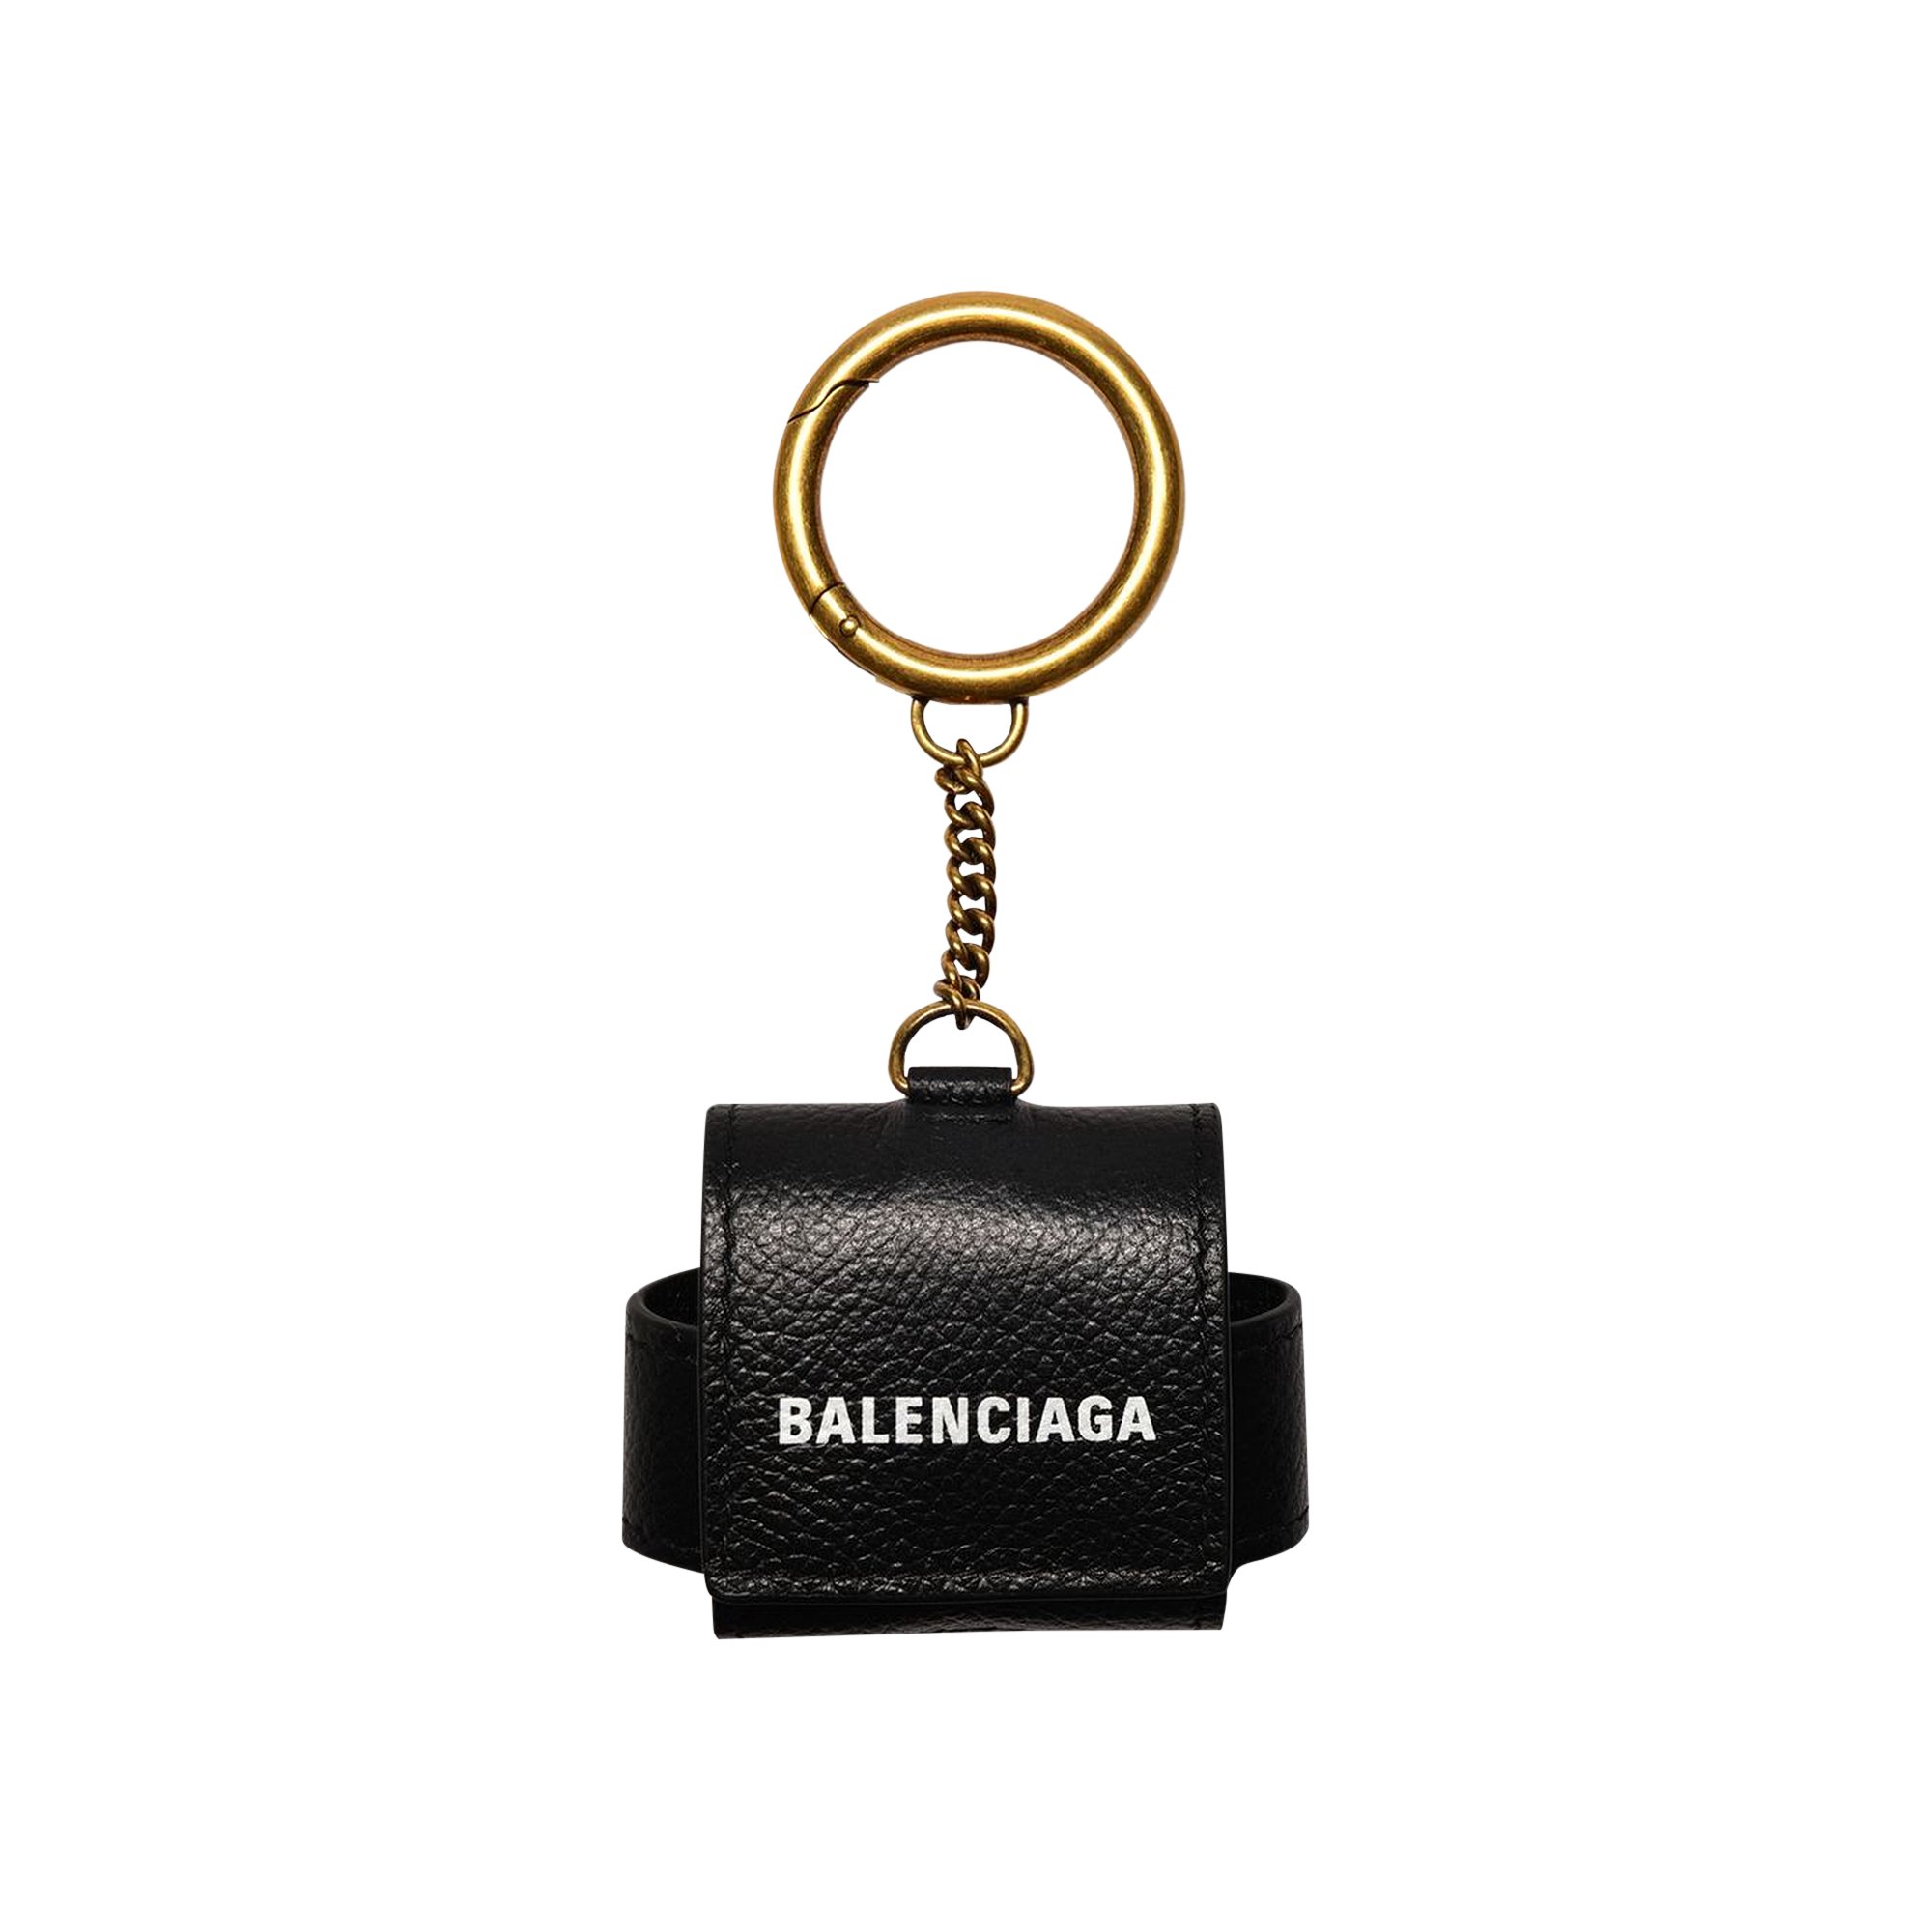 Buy Balenciaga Cash AirPods Pro Case 'Black' - 0060 200000609CAPC